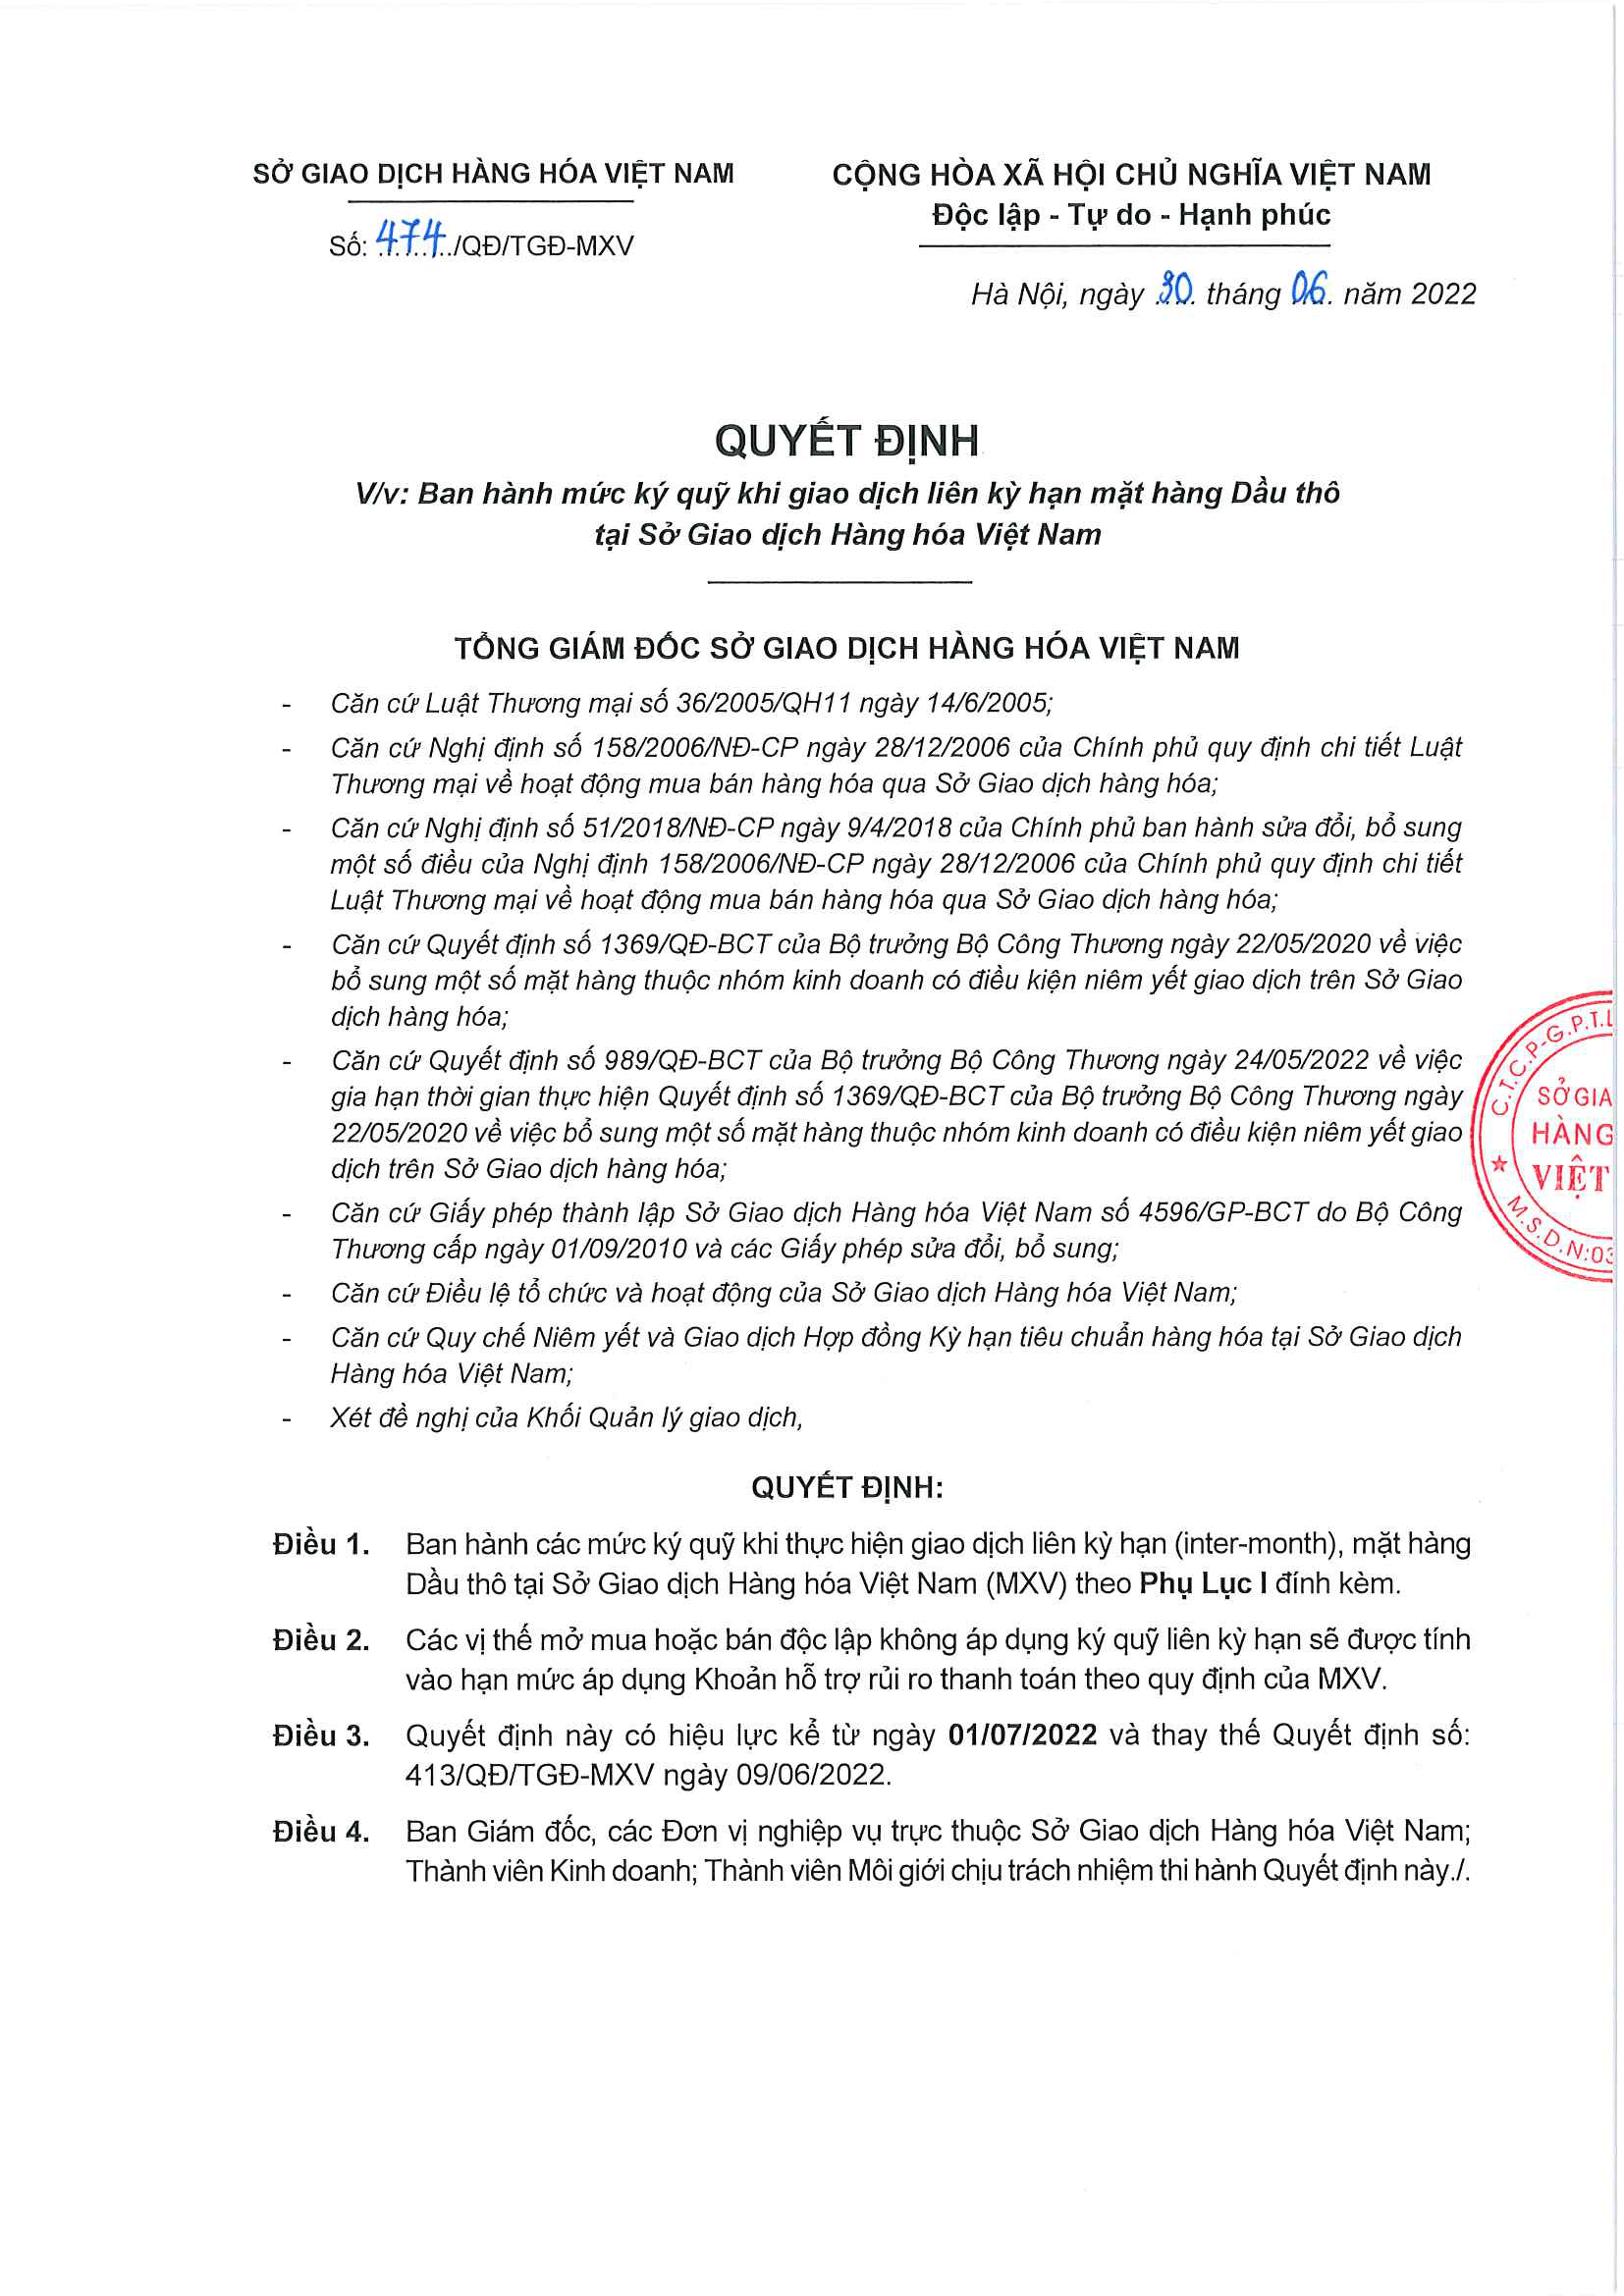 Thông Báo Ban Hành Mức Ký Quỹ Khi Giao Dịch Liên Kỳ Hạn Mặt Hàng Dầu Thô Ngày 01/07/2022